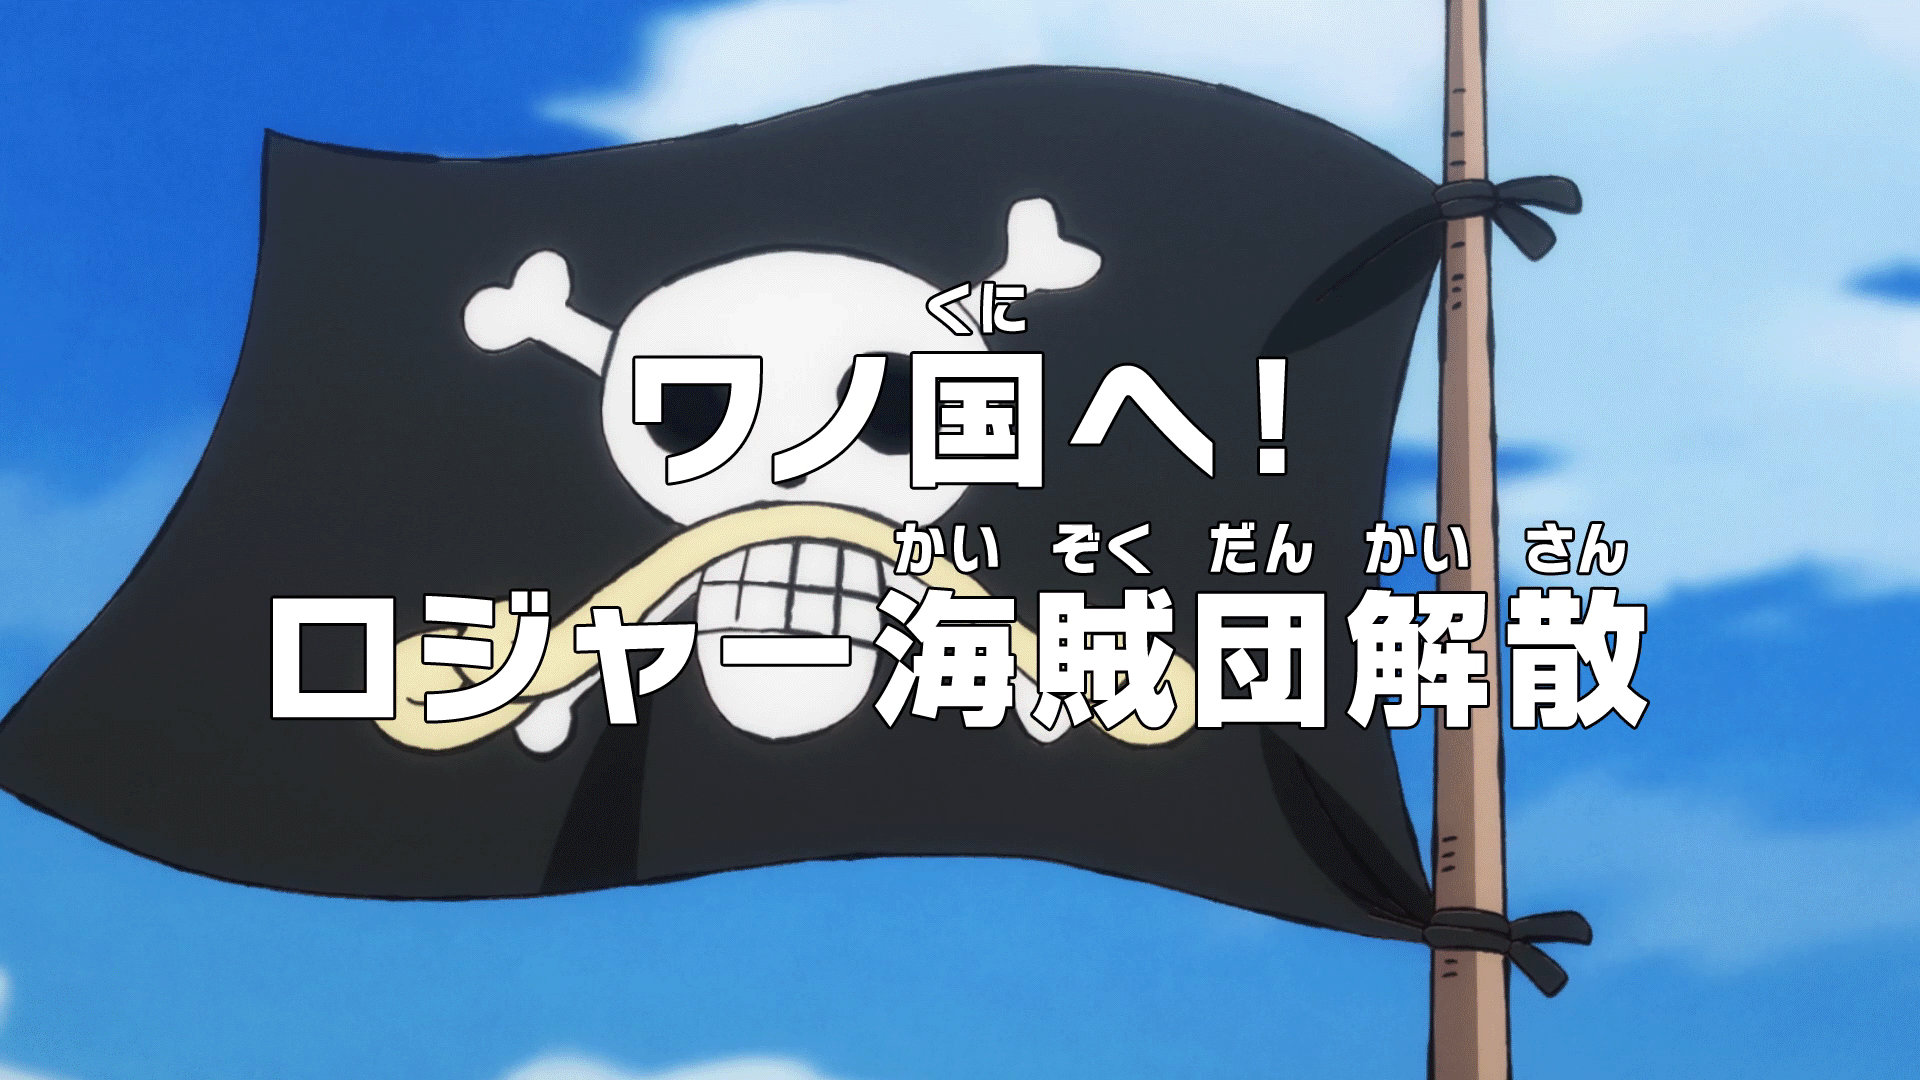 Episode 969 One Piece Wiki Fandom